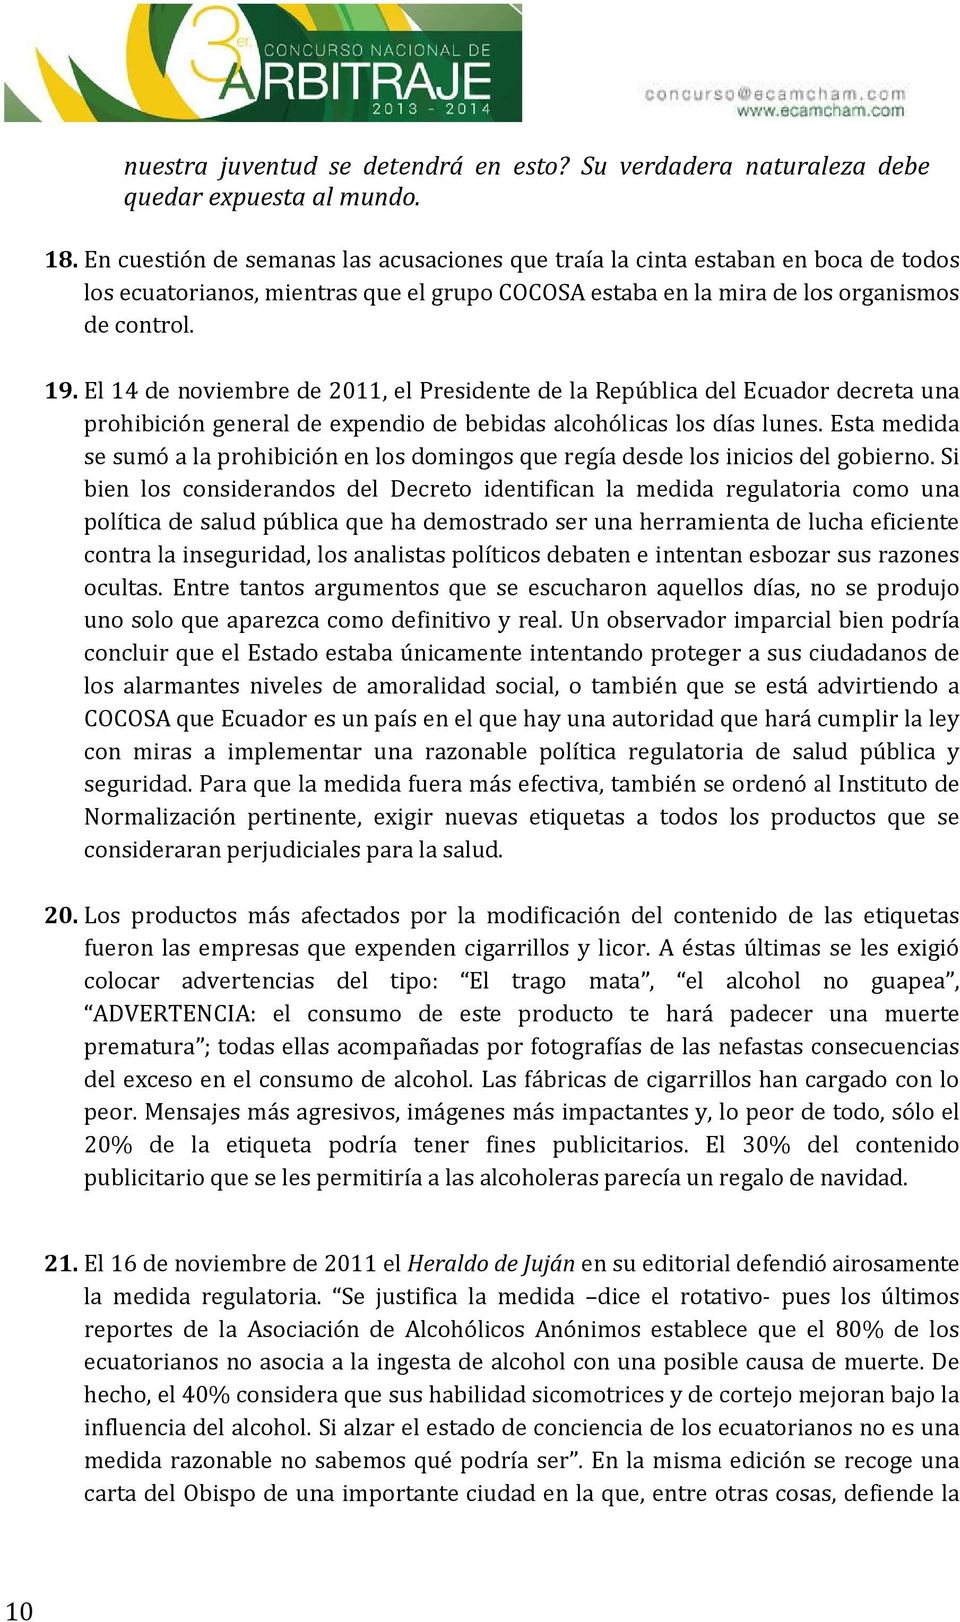 El 14 de nviembre de 2011,, el Presidente de la República del Ecuadr decreta una prhibición general de expendi de bebidas alchólicas ls días lunes.